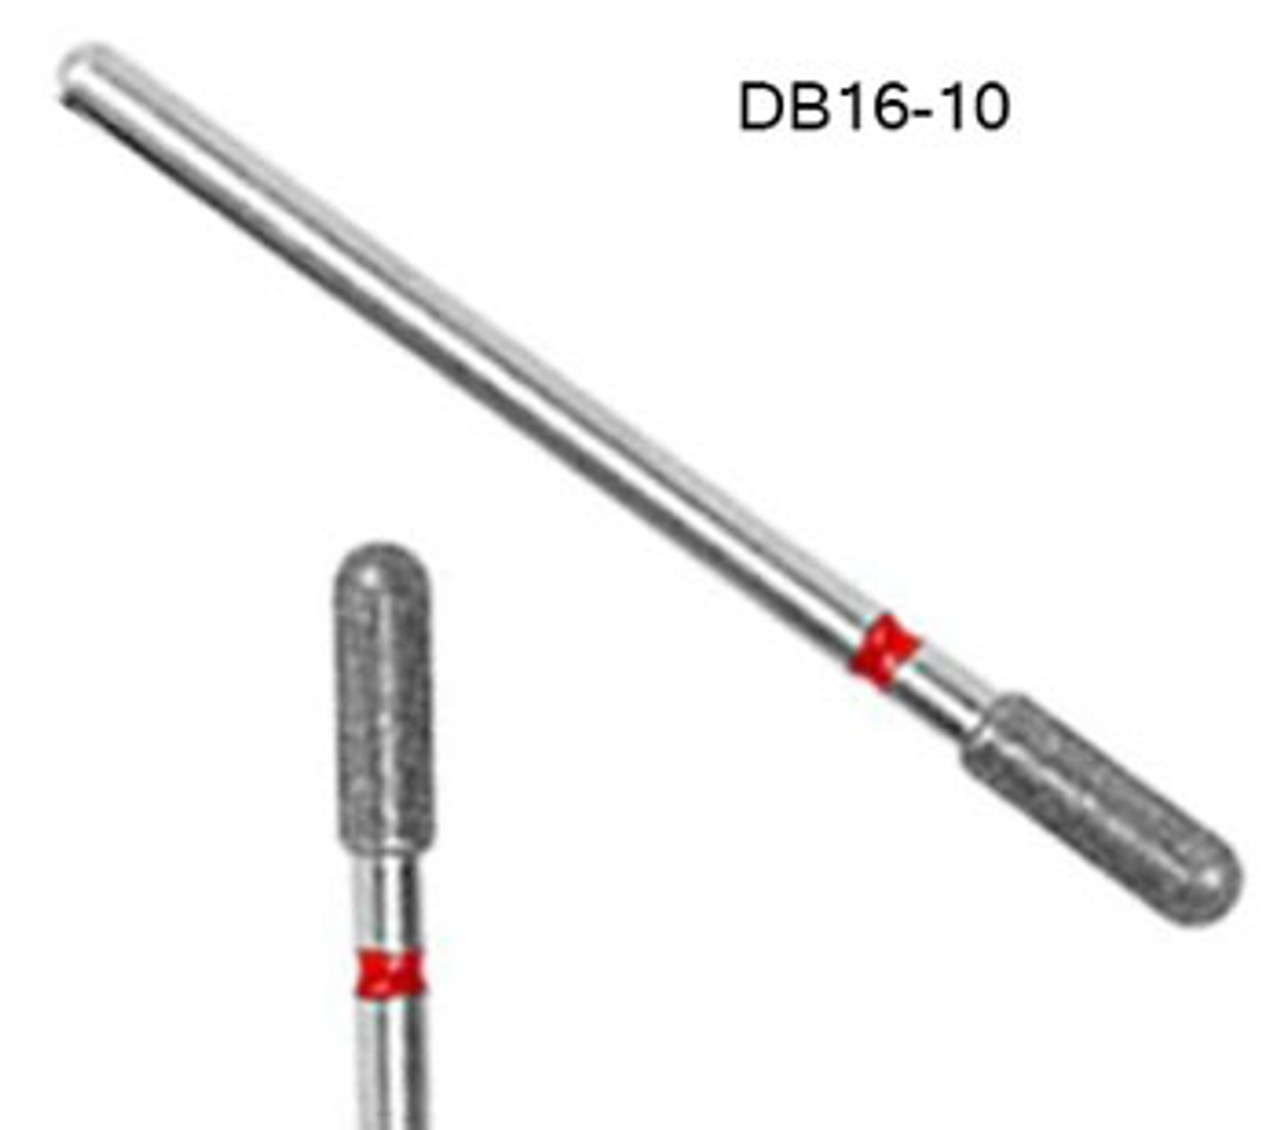 NDi beauty Diamond Carbide Bit Cylinder Shape - 3/32" - DB16